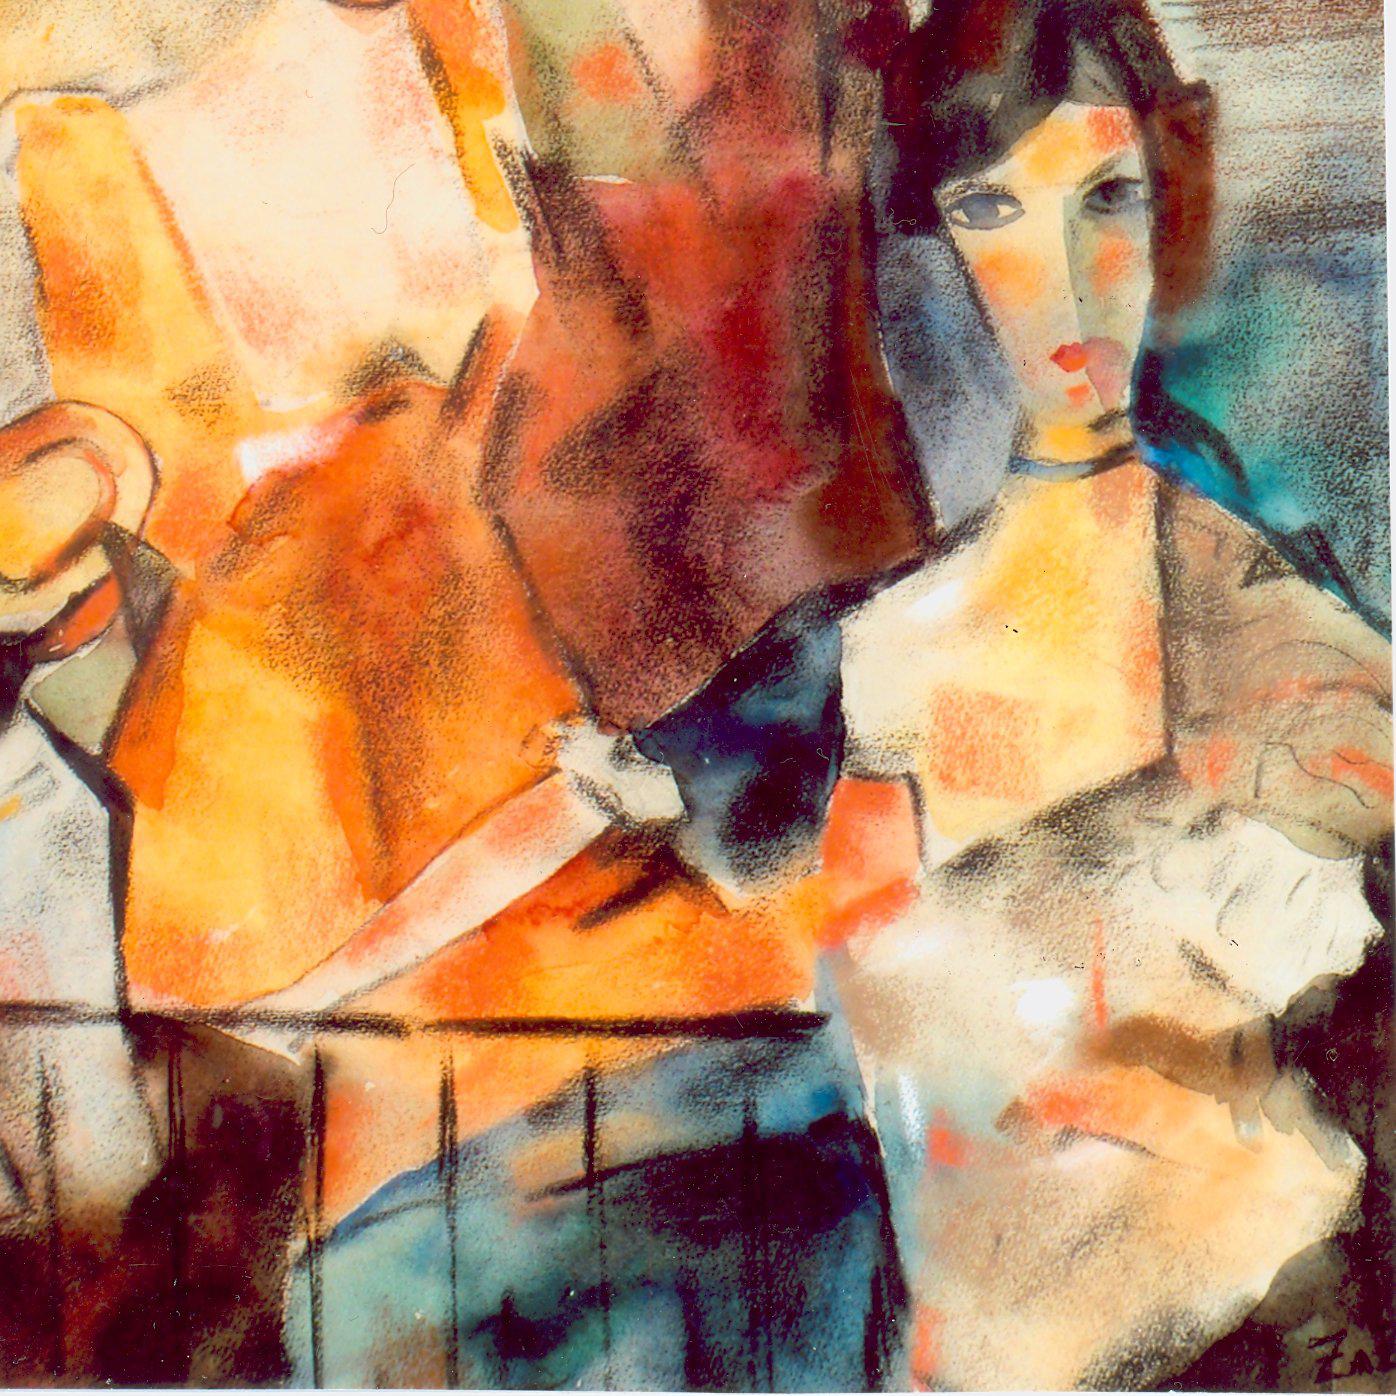 Pastel et aquarelle sur papier. Signé en bas à droite : ZAZA 
Mesures : 17.45 x 38 cm (72 x 14.96 in), Encadré : 63 x 54,8 (24.8 x 21.57 in)

Zaza Tuschmalischvili (née le 15 mai 1960 à Skra, Géorgie) est une peintre géorgienne qui vit et travaille